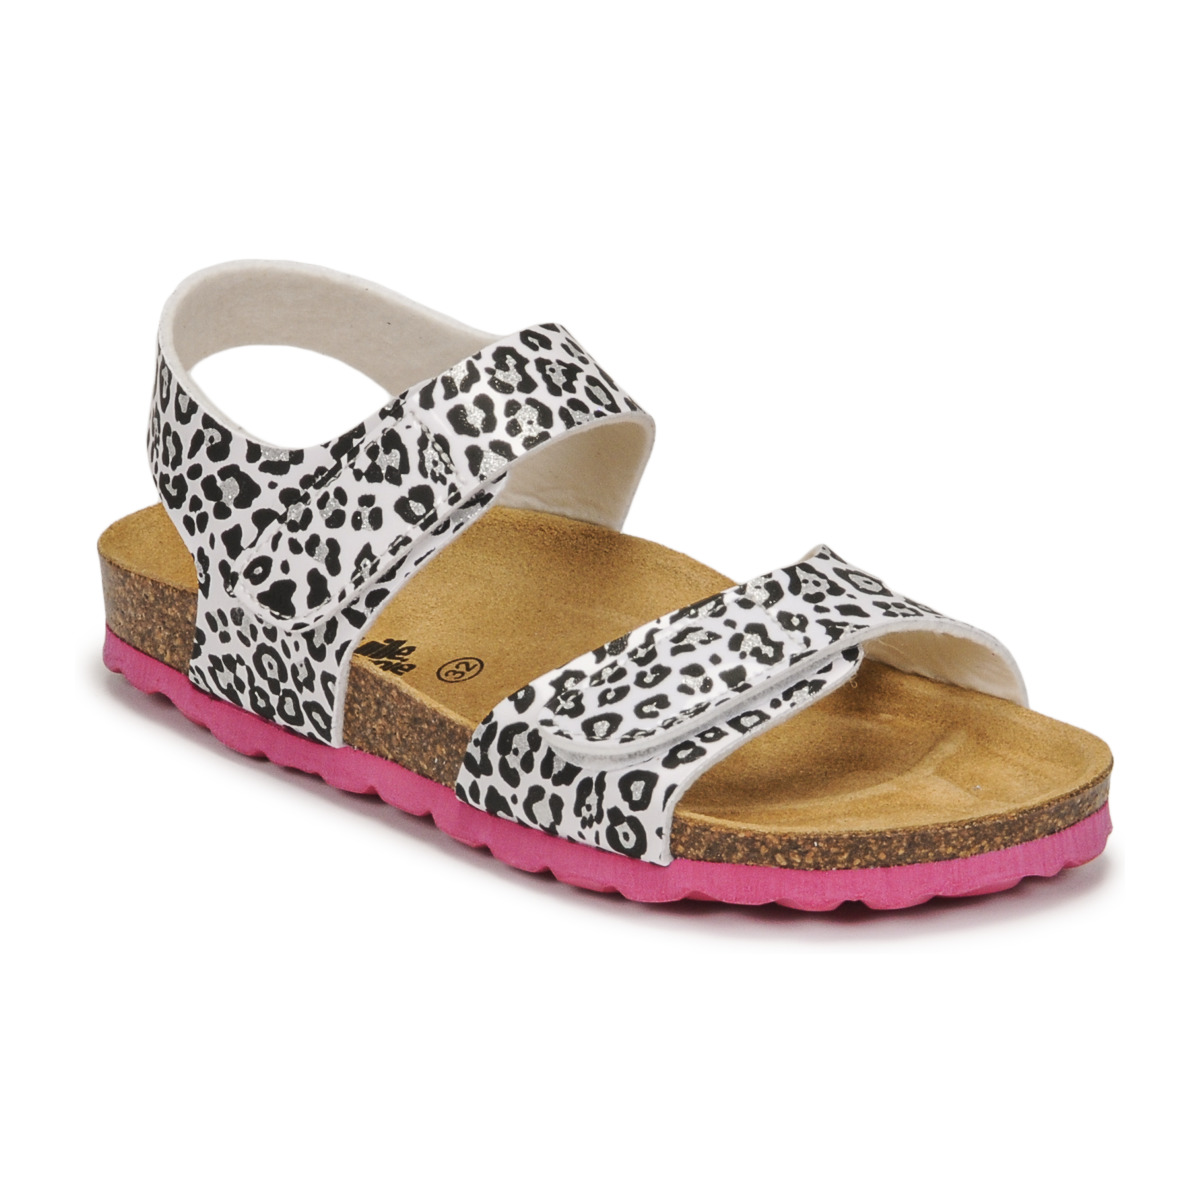 Shoes Girl Sandals Citrouille et Compagnie BELLI JOE Leopard